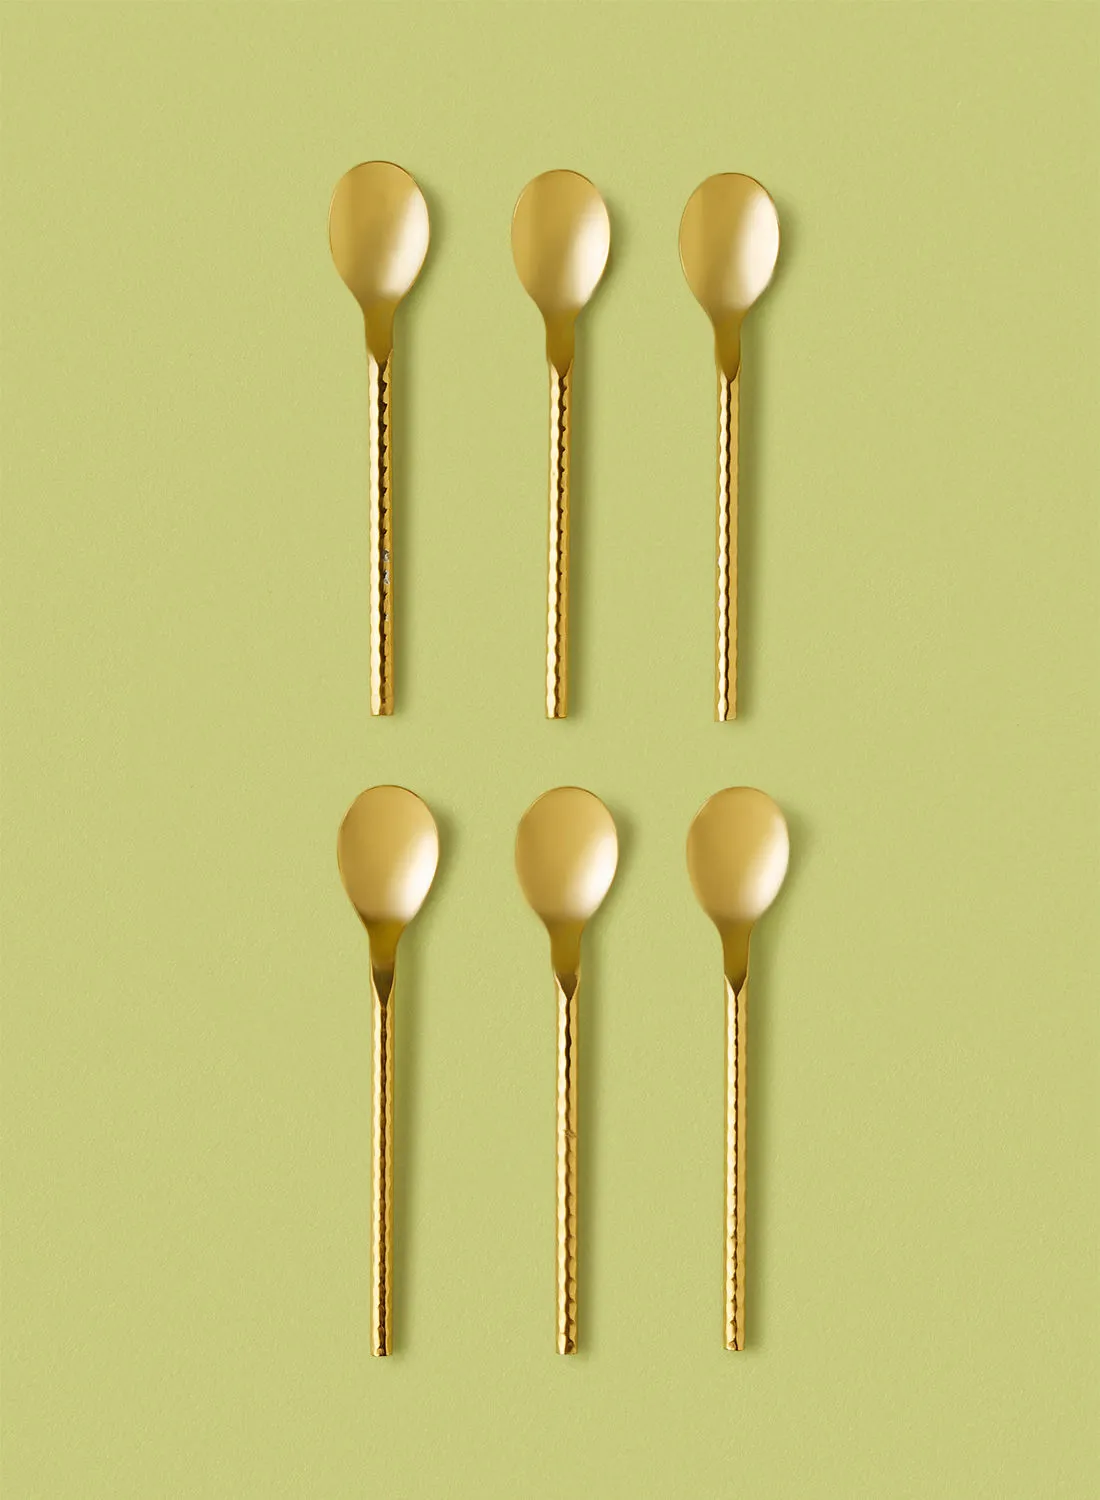 noon east 6 Piece Teaspoons Set - Made Of Stainless Steel - Silverware Flatware - Spoons - Spoon Set - Tea Spoons - Serves 6 - Design Gold